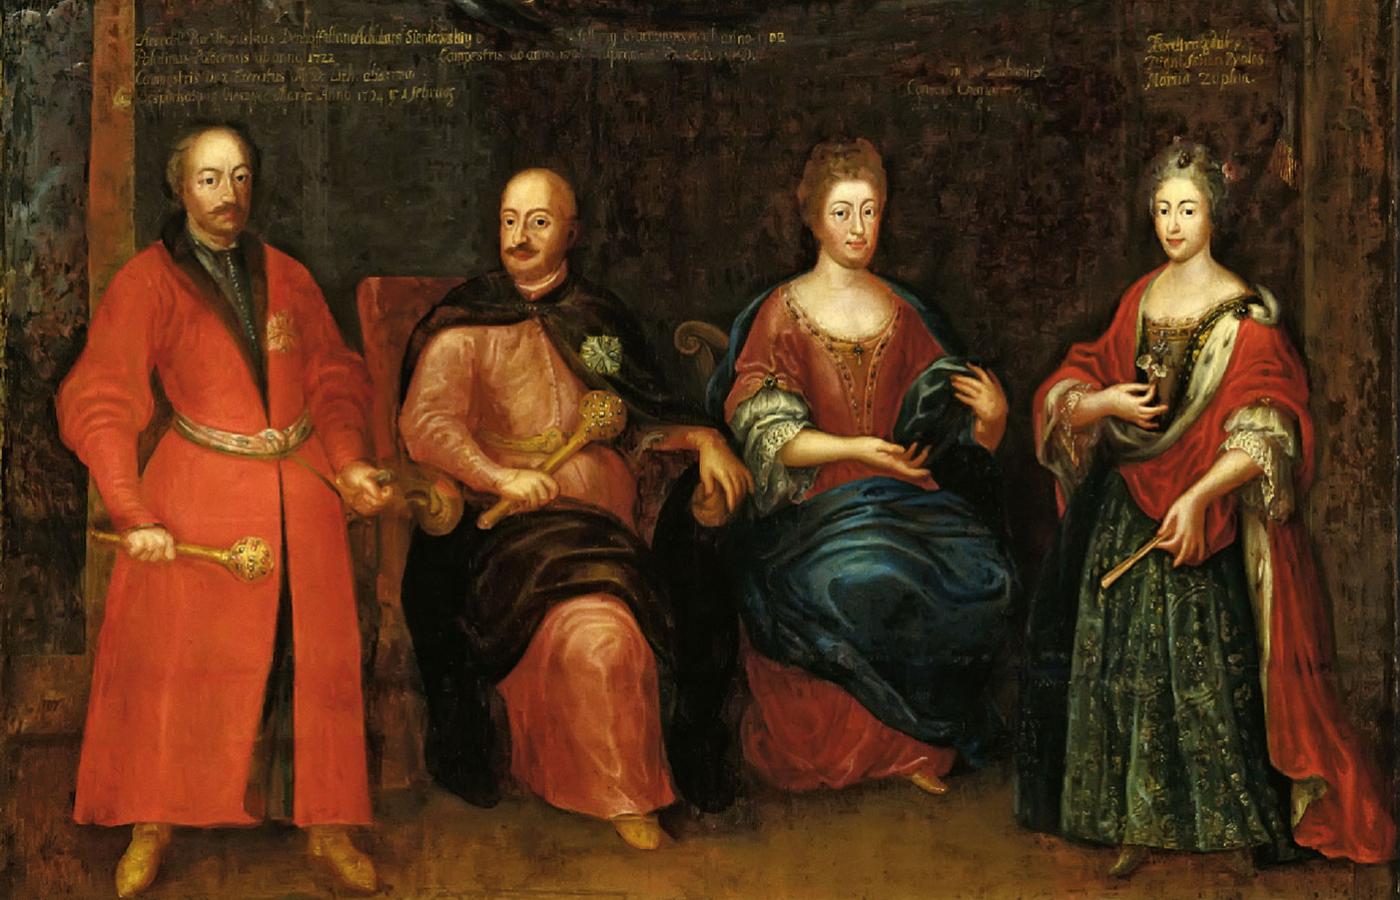 Portret rodziny Sieniawskich. Mężczyźni w żupanach i kontuszach, kobiety w sukniach o kroju zachodnim, obraz z pocz. XVIII w.